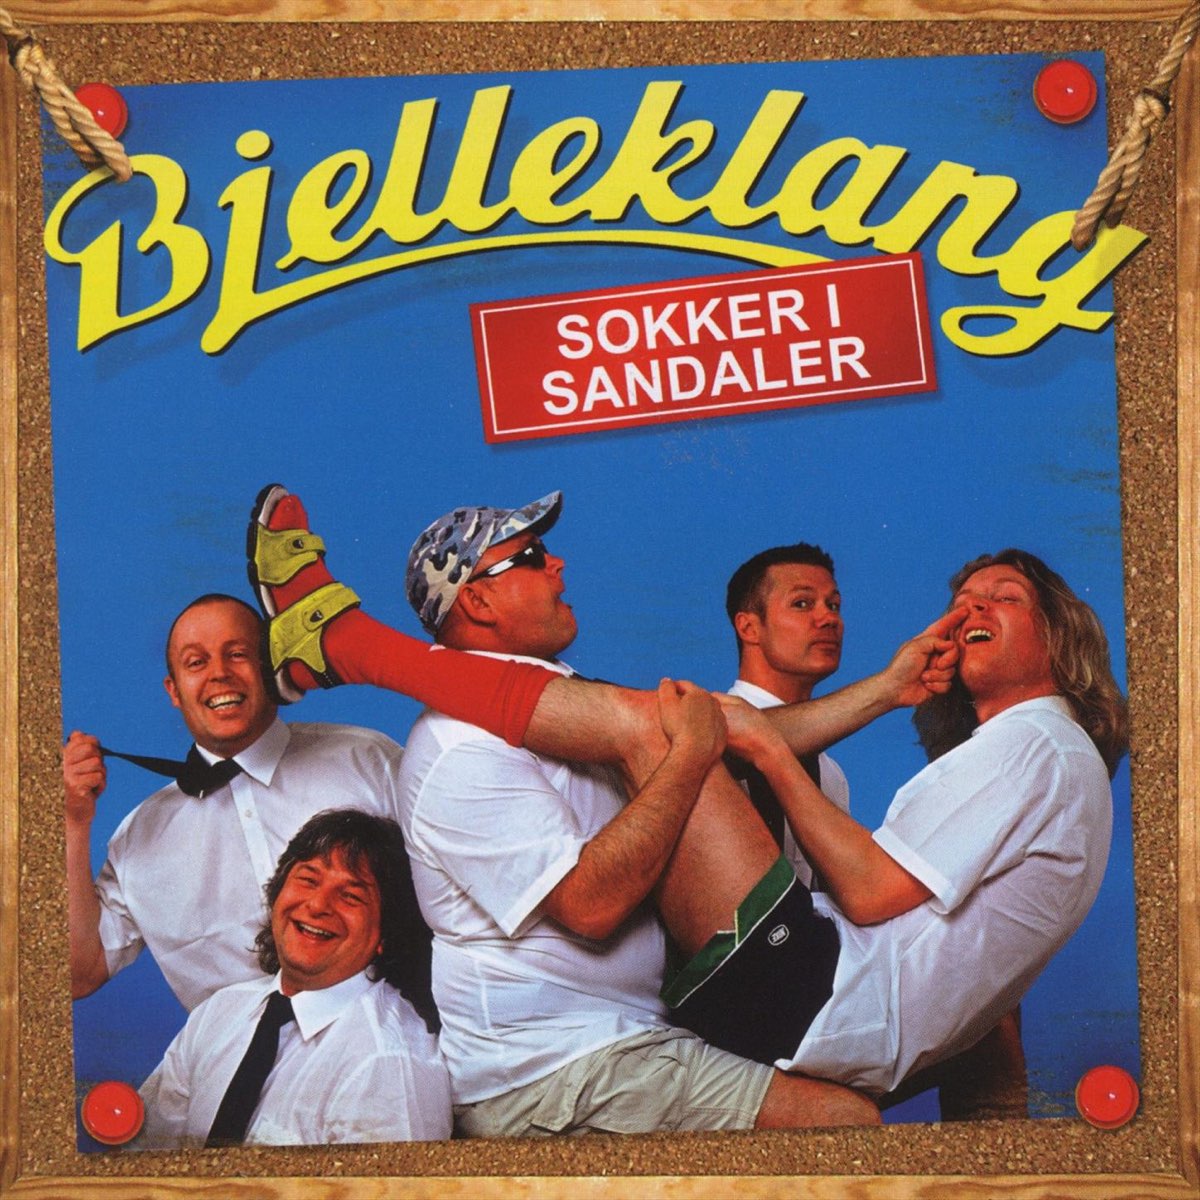 Sokker I Sandaler - Album by Bjelleklang - Apple Music